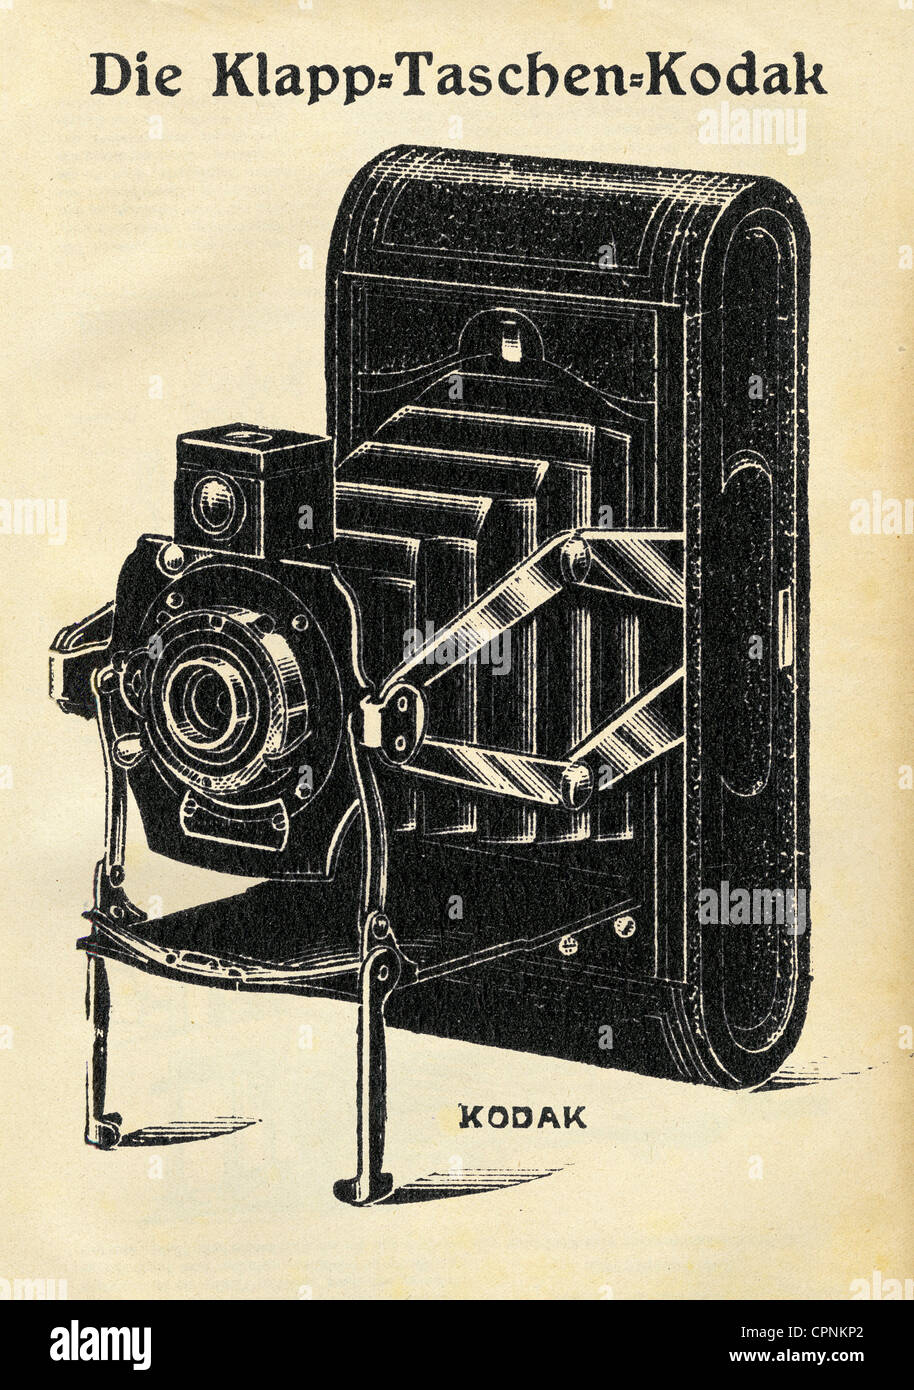 Photographie, appareils photo, appareil photo Kodak, poche pliable Kodak, taille de l'image: 6 x 9 centimètre, coût à ce moment en Allemagne: 43 Mark, producteur de l'appareil photo: Eastmann Kodak Co., Rochester, New York, Etats-Unis, 1914, droits-supplémentaires-Clearences-non disponible Banque D'Images